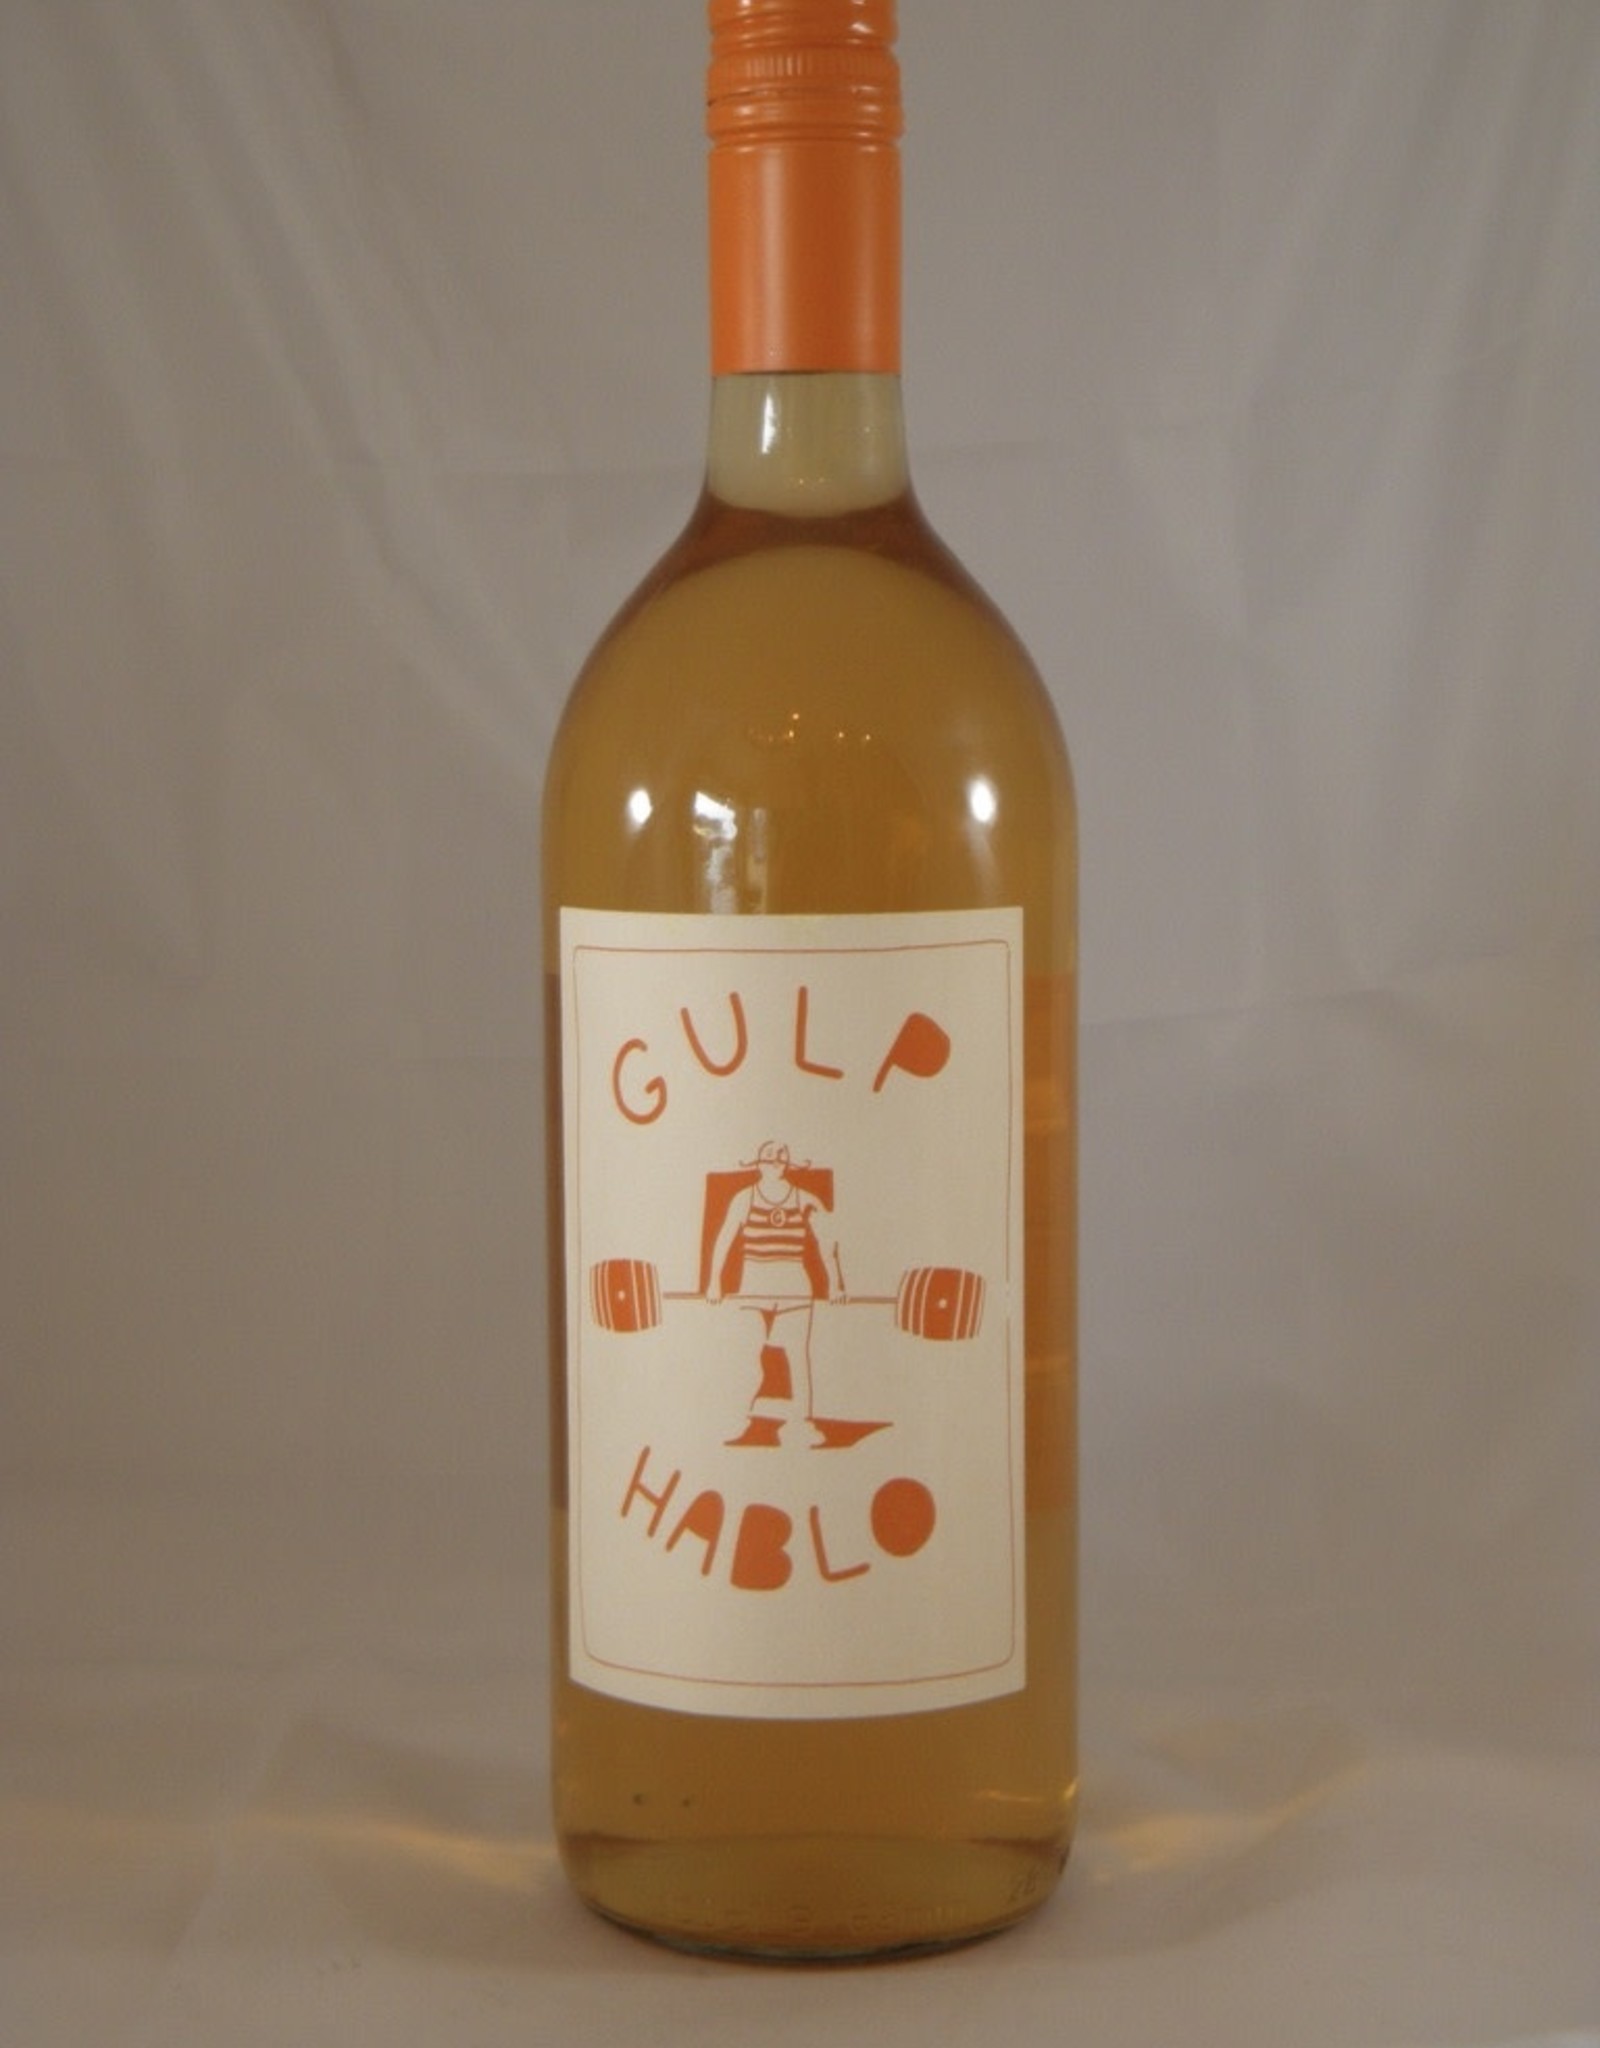 Parra Jimnez Orange Wine Gulp Hablo Spain 2022 Liter